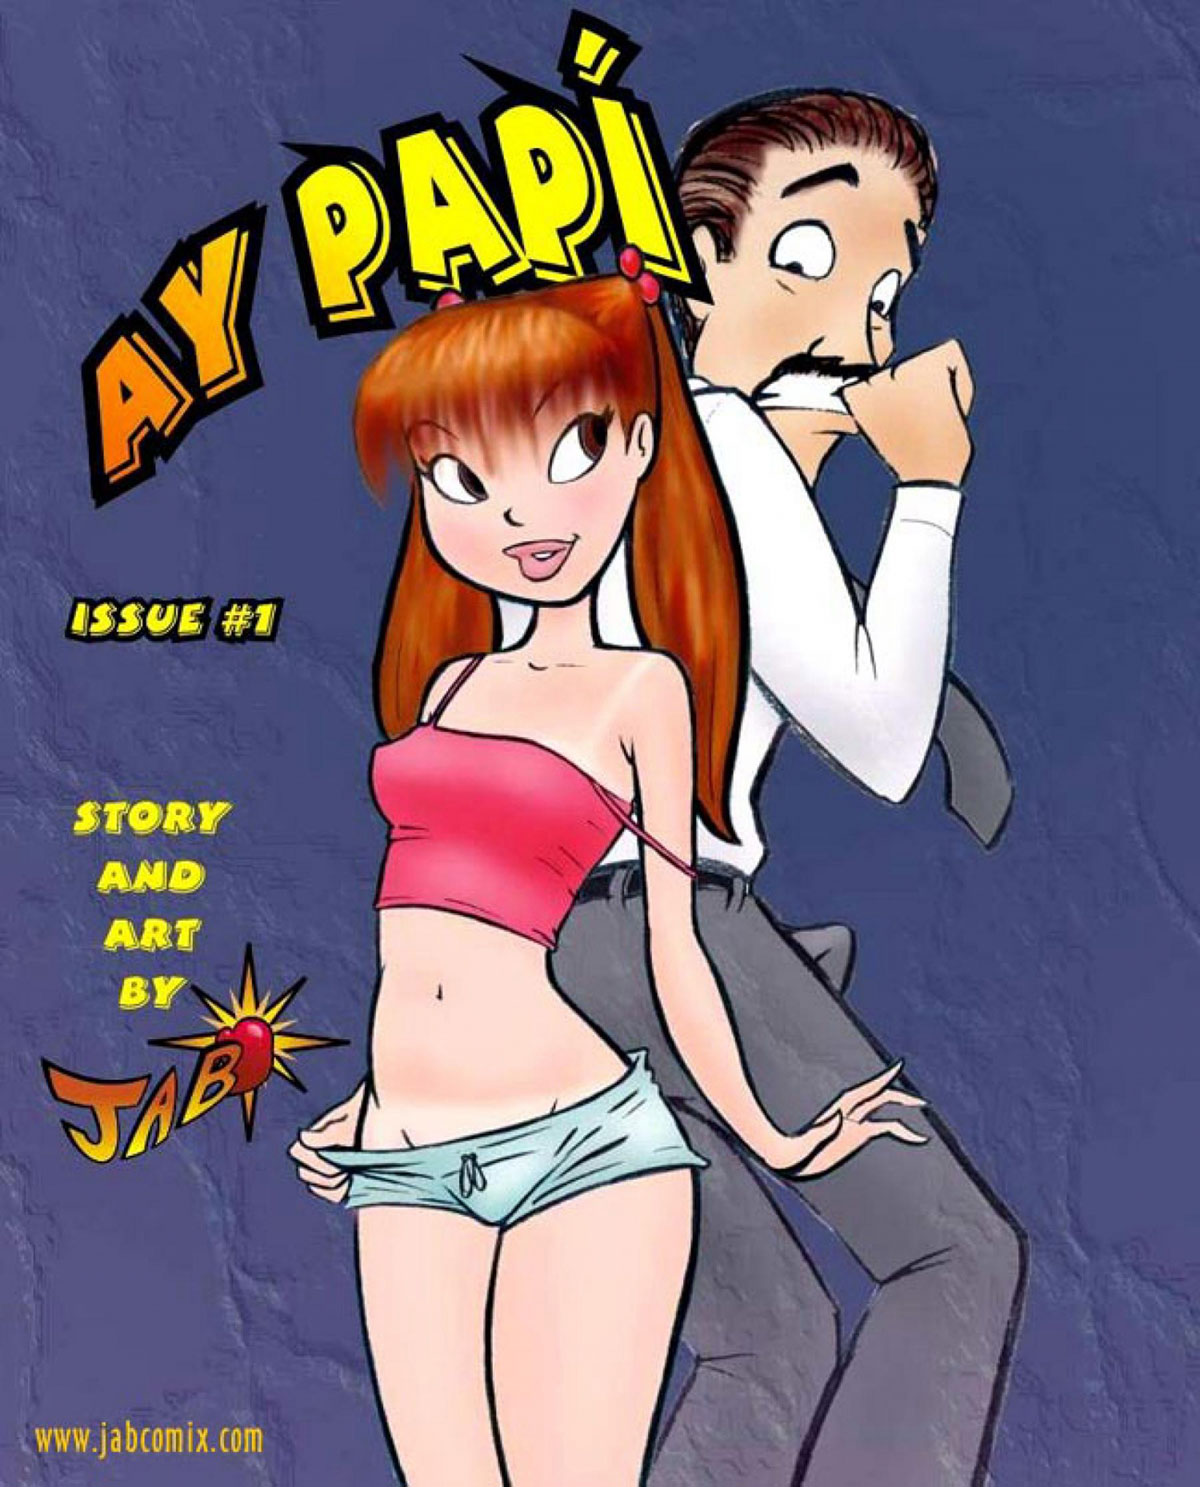 Jab porn comic - Ay Papi